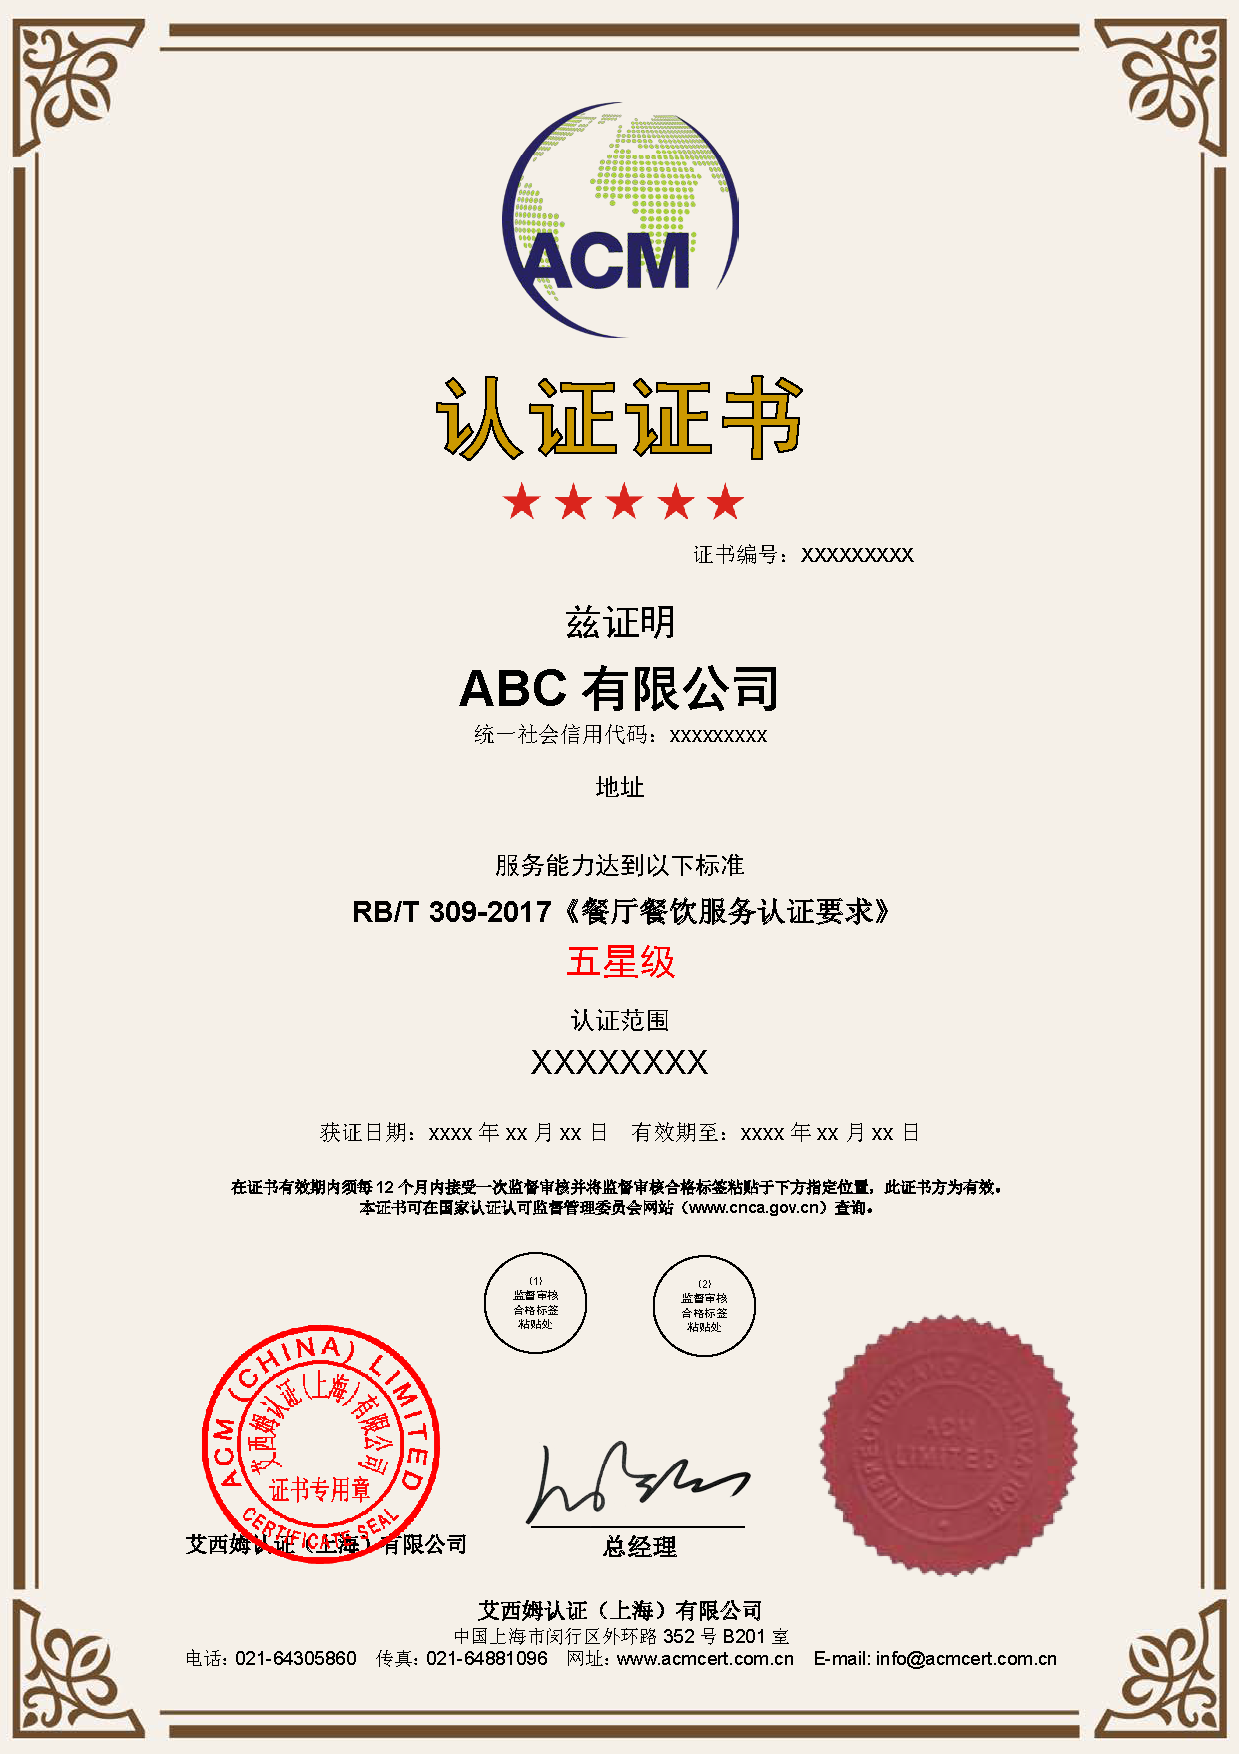 餐饮服务认证证书样本_中文.png